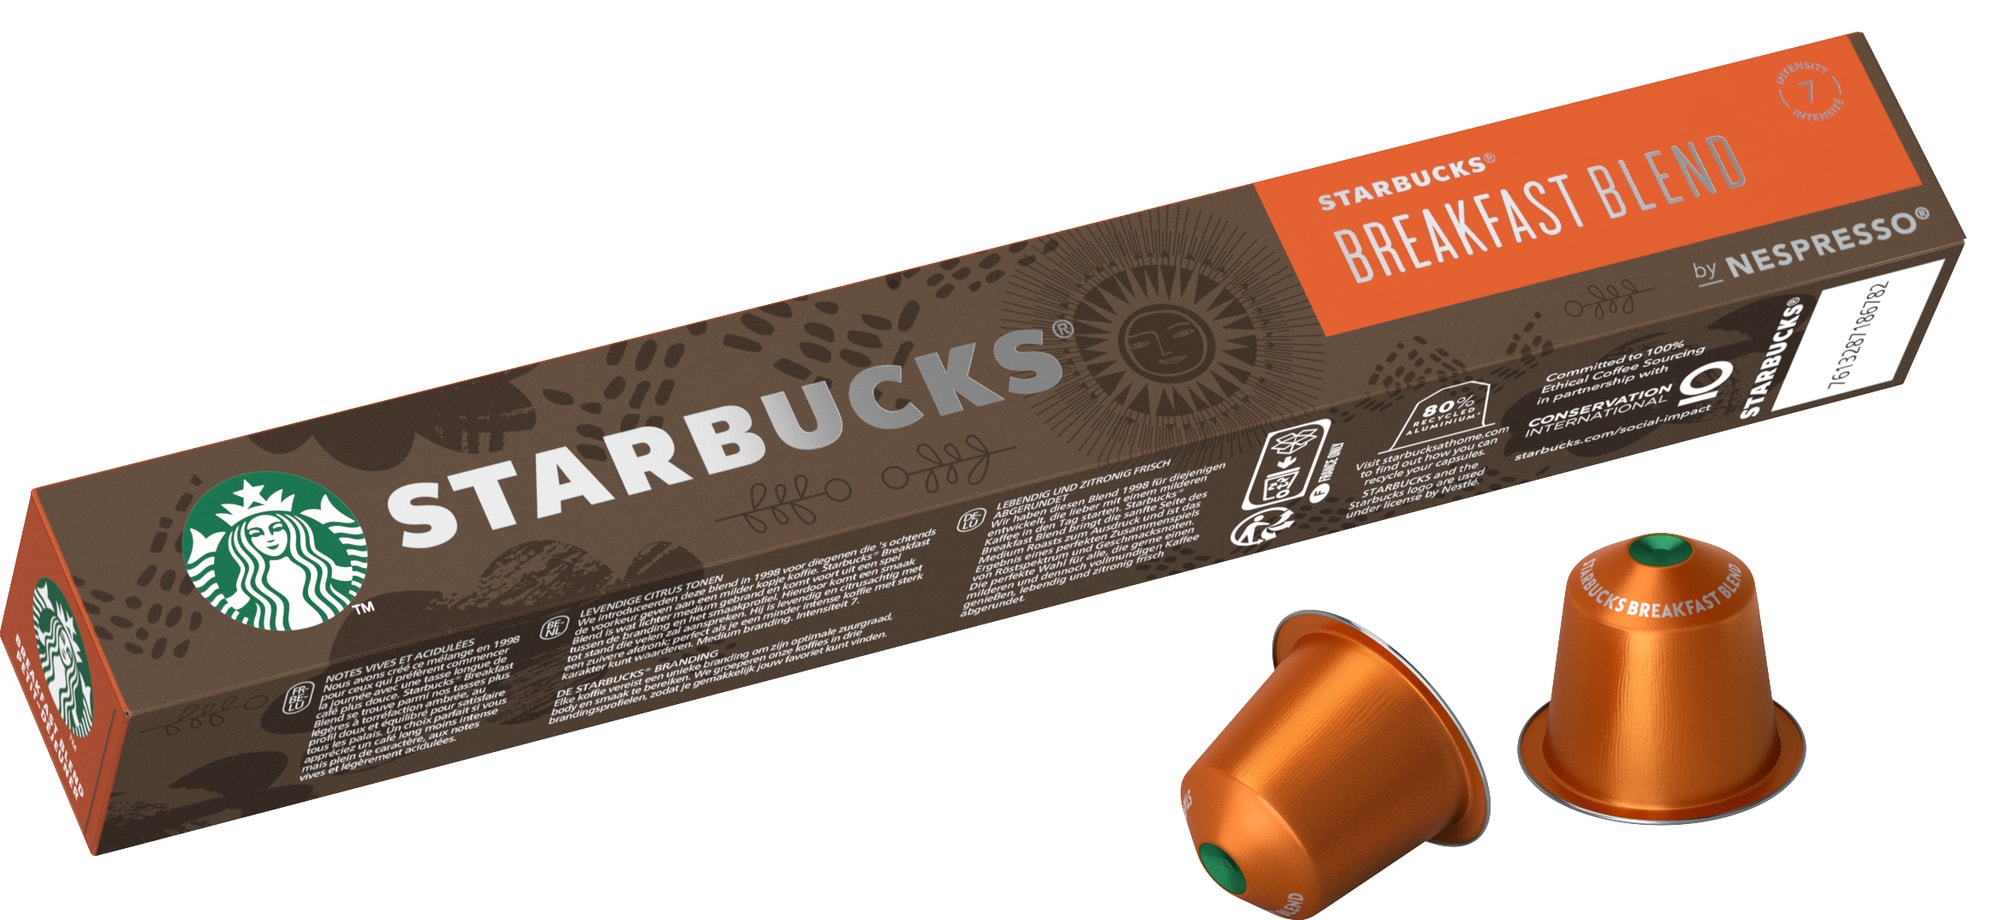 Starbucks by Nespresso Breakfast Blend kaffekapsler 12473157